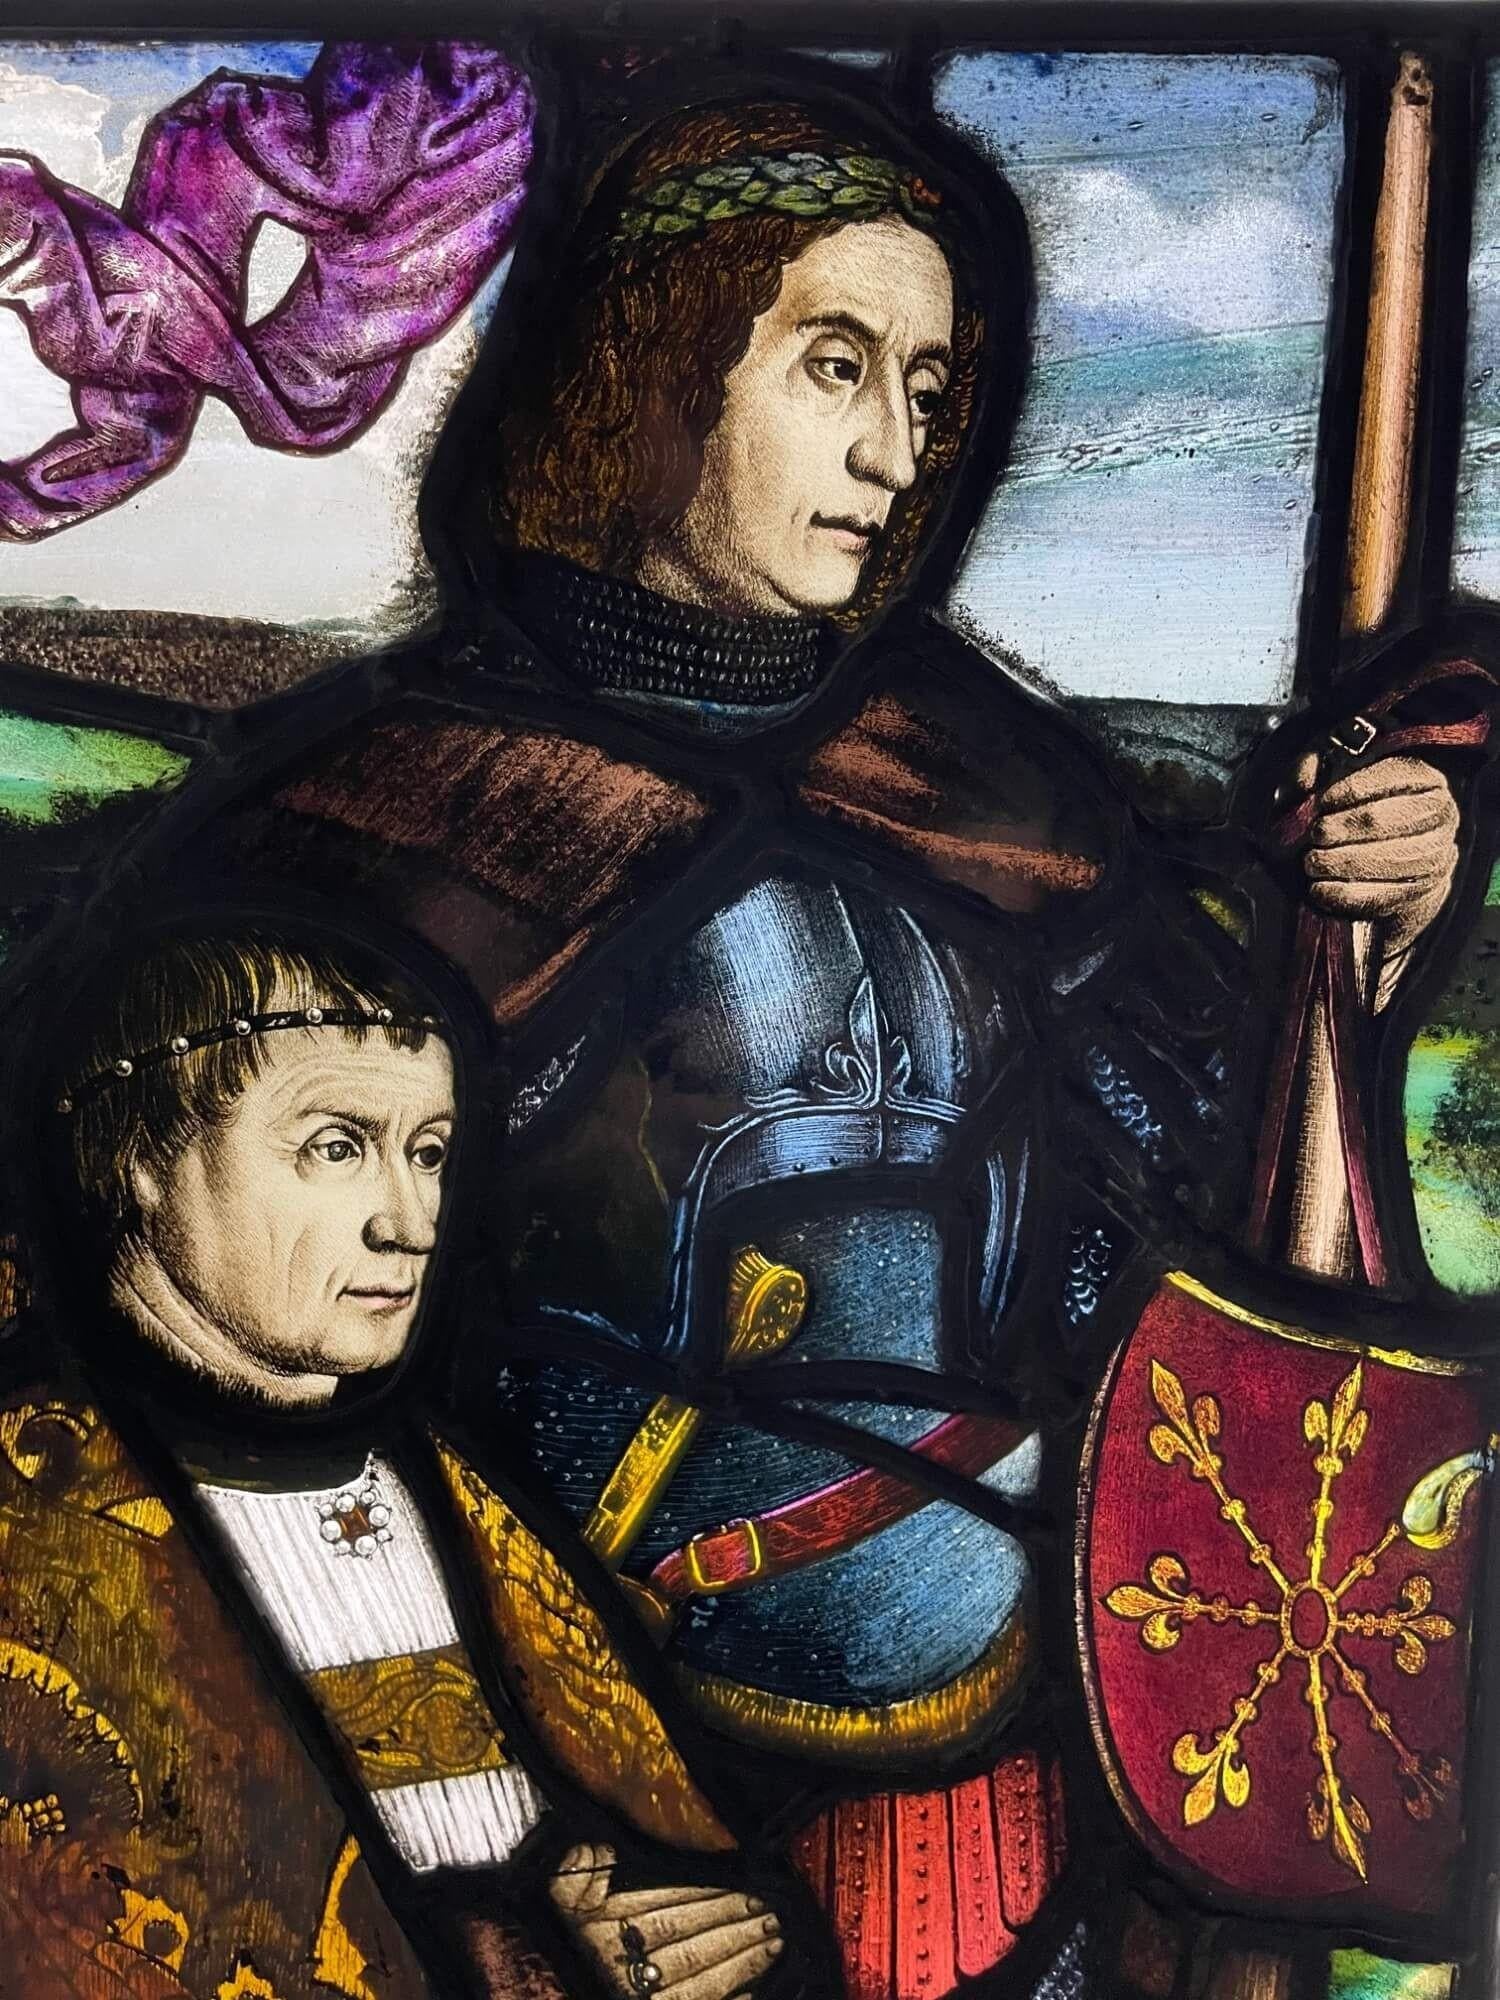 Ein antikes englisches Bleiglasfenster im mittelalterlichen Stil um 1850 im Tudor-Revival-Stil, das einen gepanzerten Ritter darstellt, der ein Banner neben einem Priester hält, als stünde er am Rande einer großen Schlacht. Kräftige Farben und